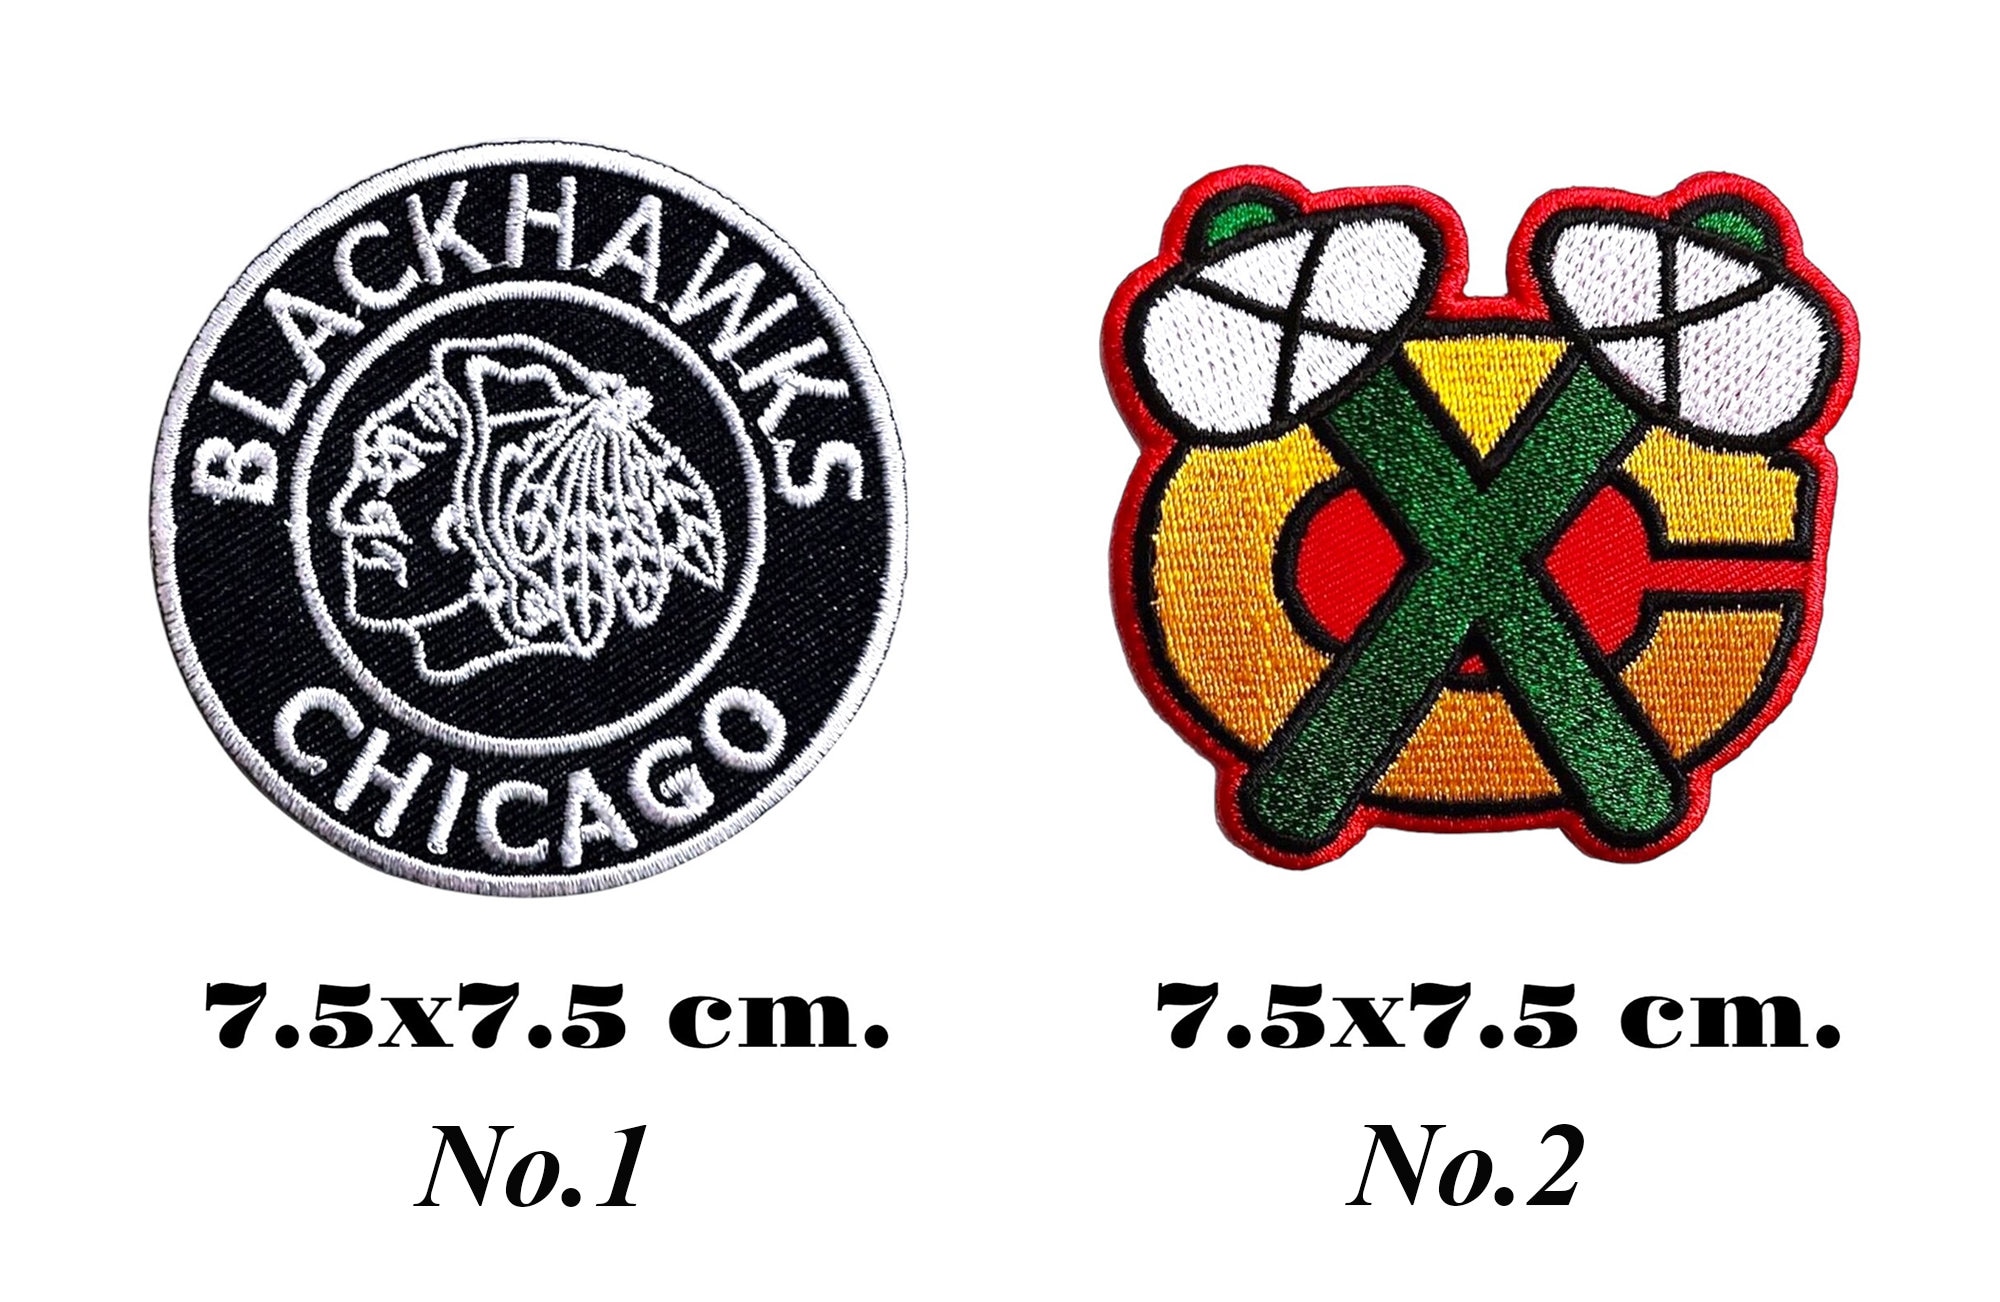  Chicago Blackhawks Shoulder Patch Logo Emblem Team